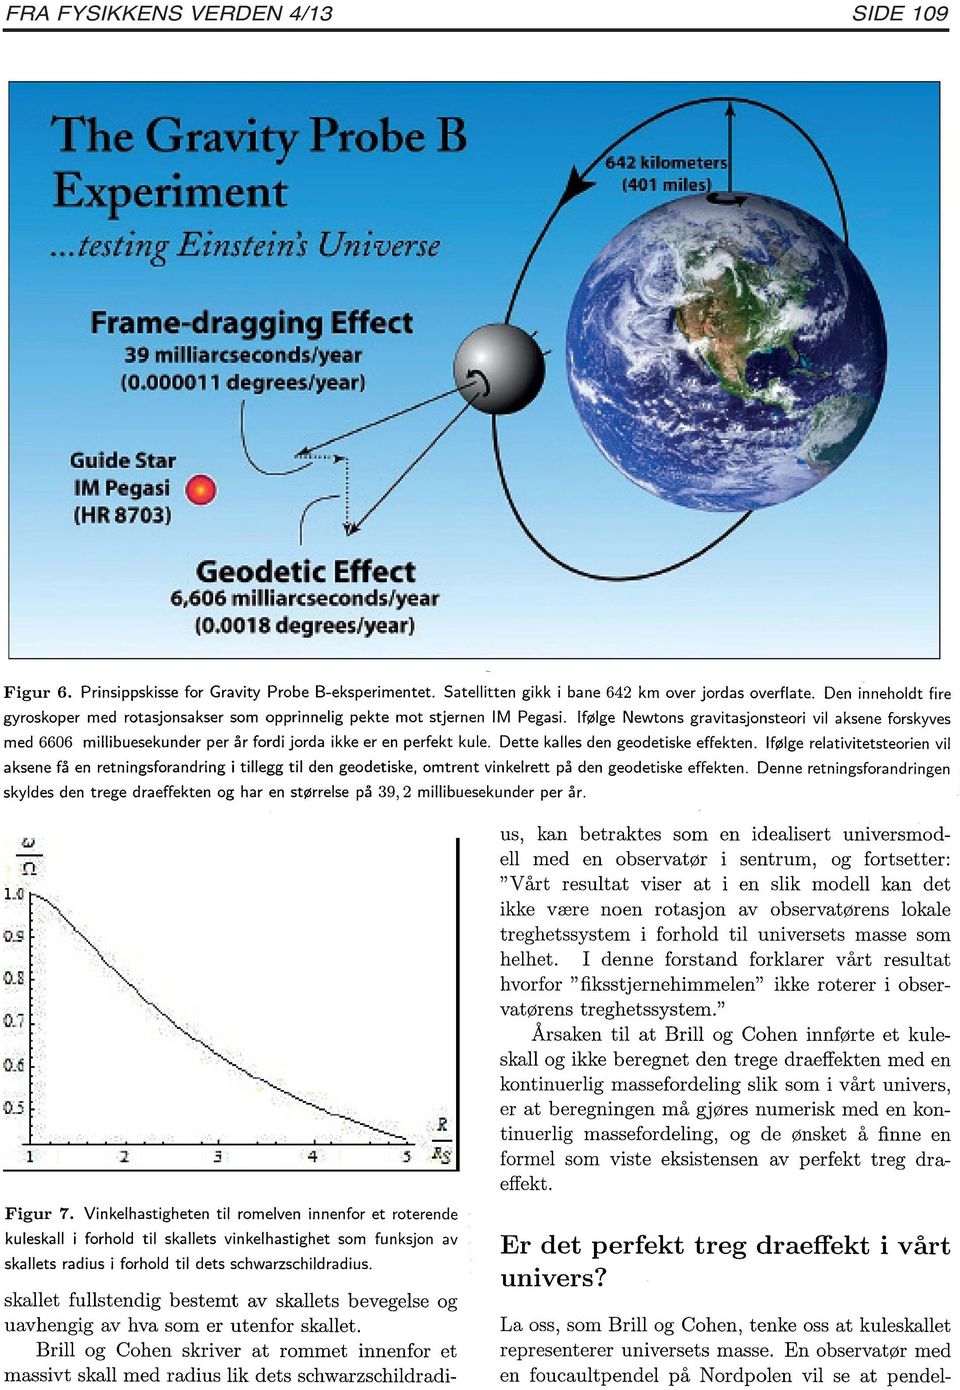 Ifølge Newtons gravitasjonsteori vil a ksene forskyves med 6606 millibuesekunder per år fordi jorda ikke er en perfekt kule. Dette kalles de n geodetiske effekten.